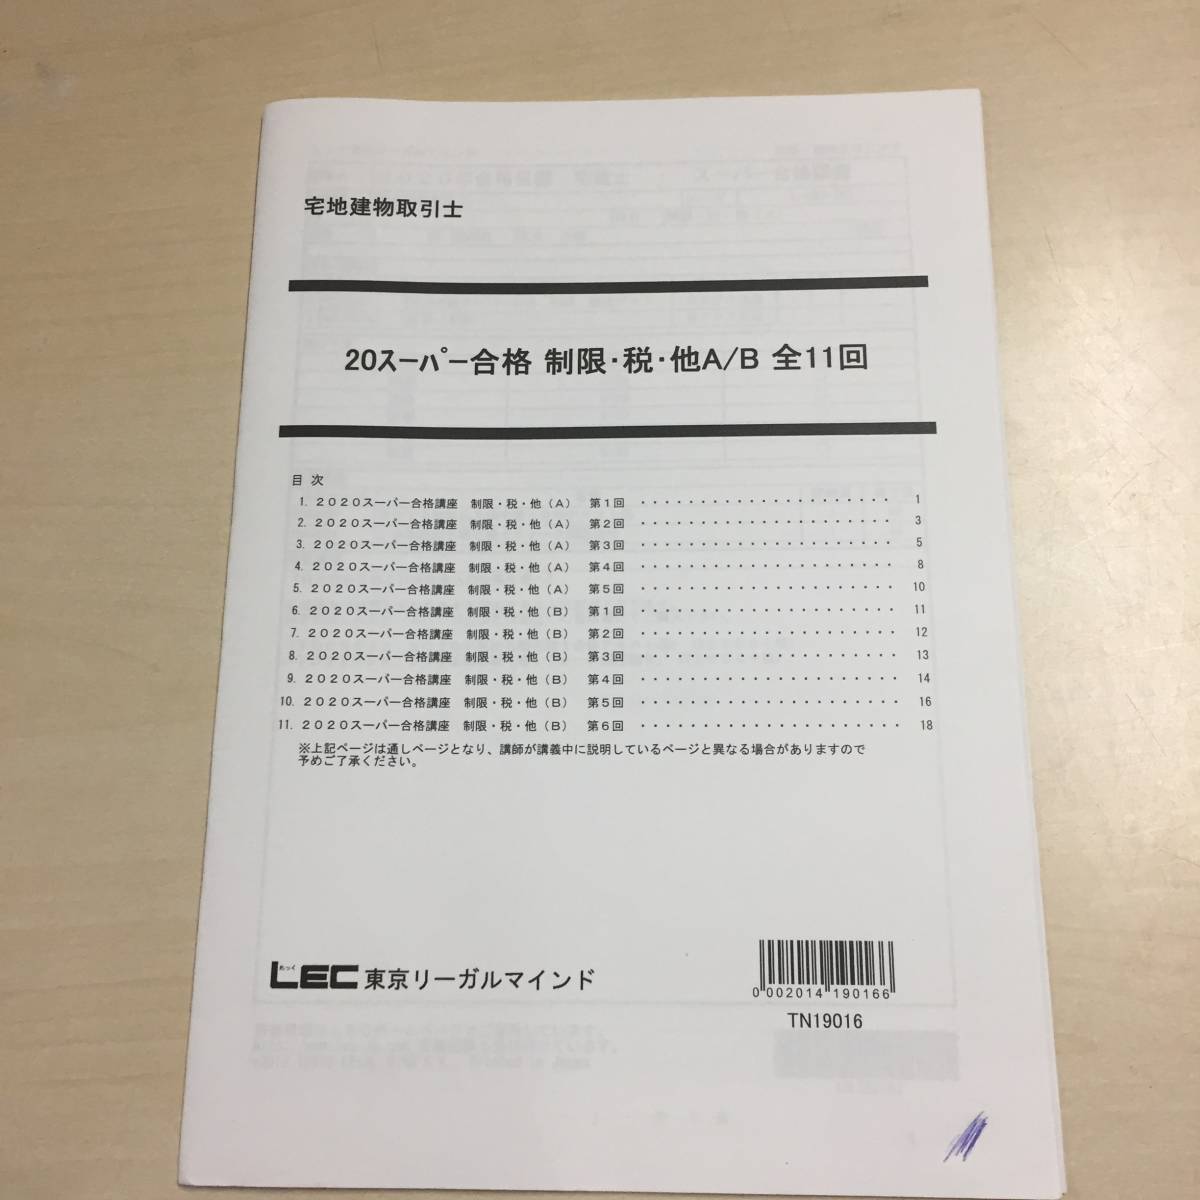 ◎◎LEC東京リーガルマインド 2020年合格目標 テキスト 過去問 DVD セット 権利 法_画像6